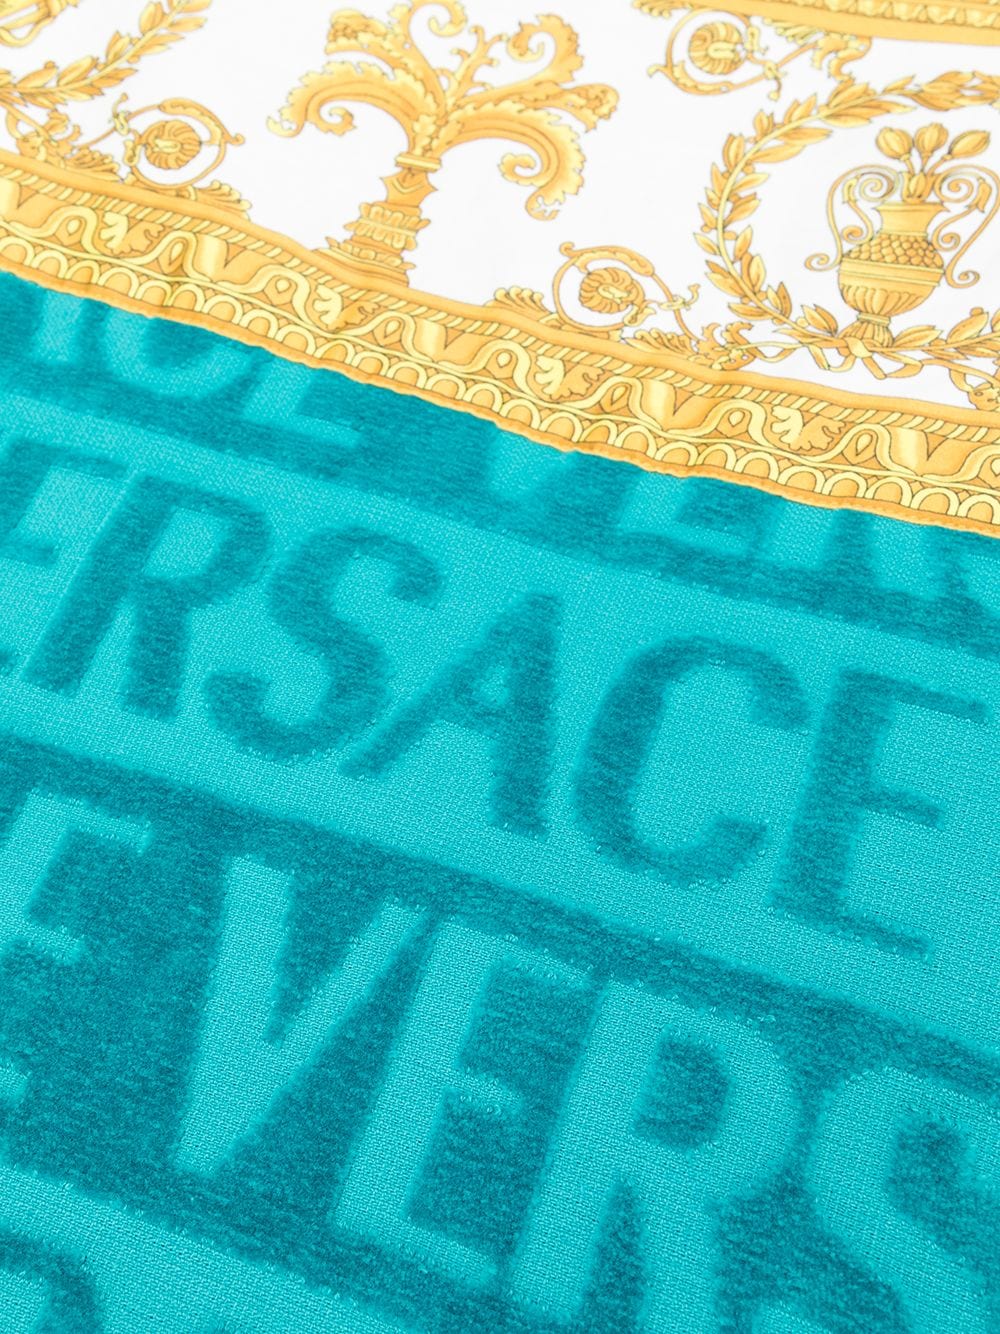 фото Versace пляжное полотенце с отделкой baroque